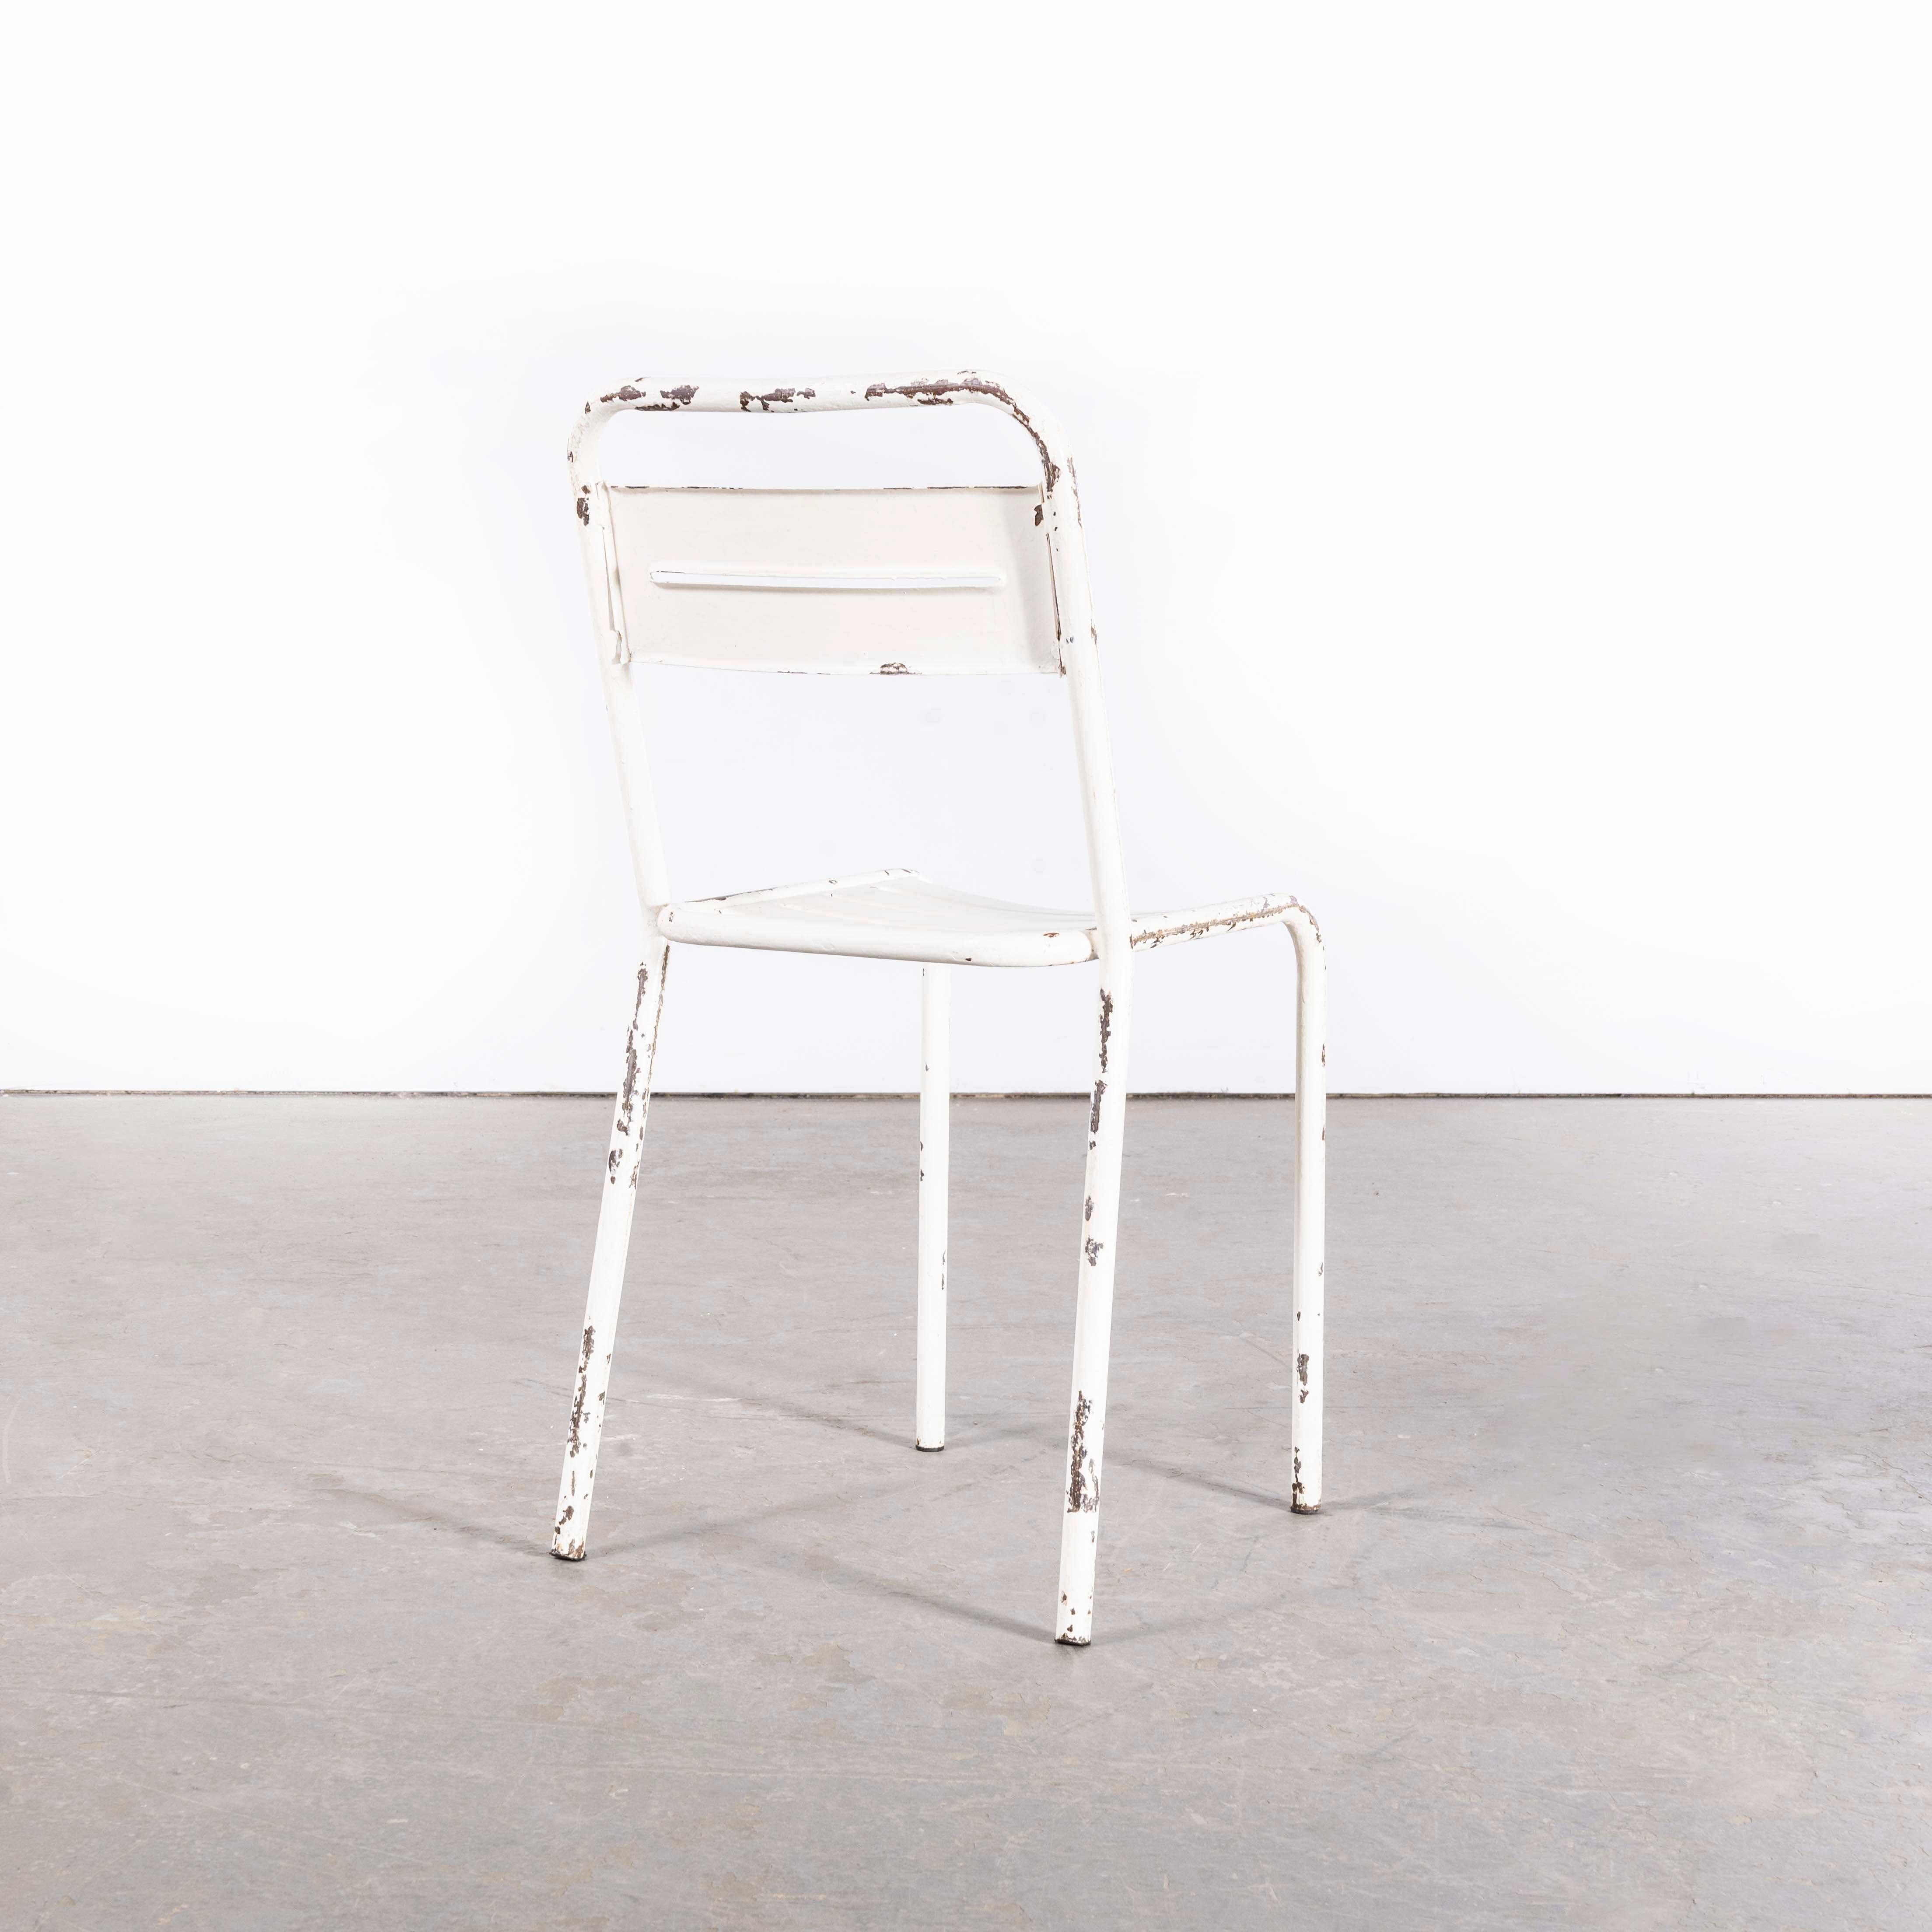 1950's French White Metal Stacking Outdoor Chairs - Set von sechs

1950's French White Metal Stacking Outdoor Chairs - Set Of Six. Dieser Stuhl, der an Tolix erinnert, aber nicht von Tolix hergestellt wurde, wurde in den 1950er Jahren von